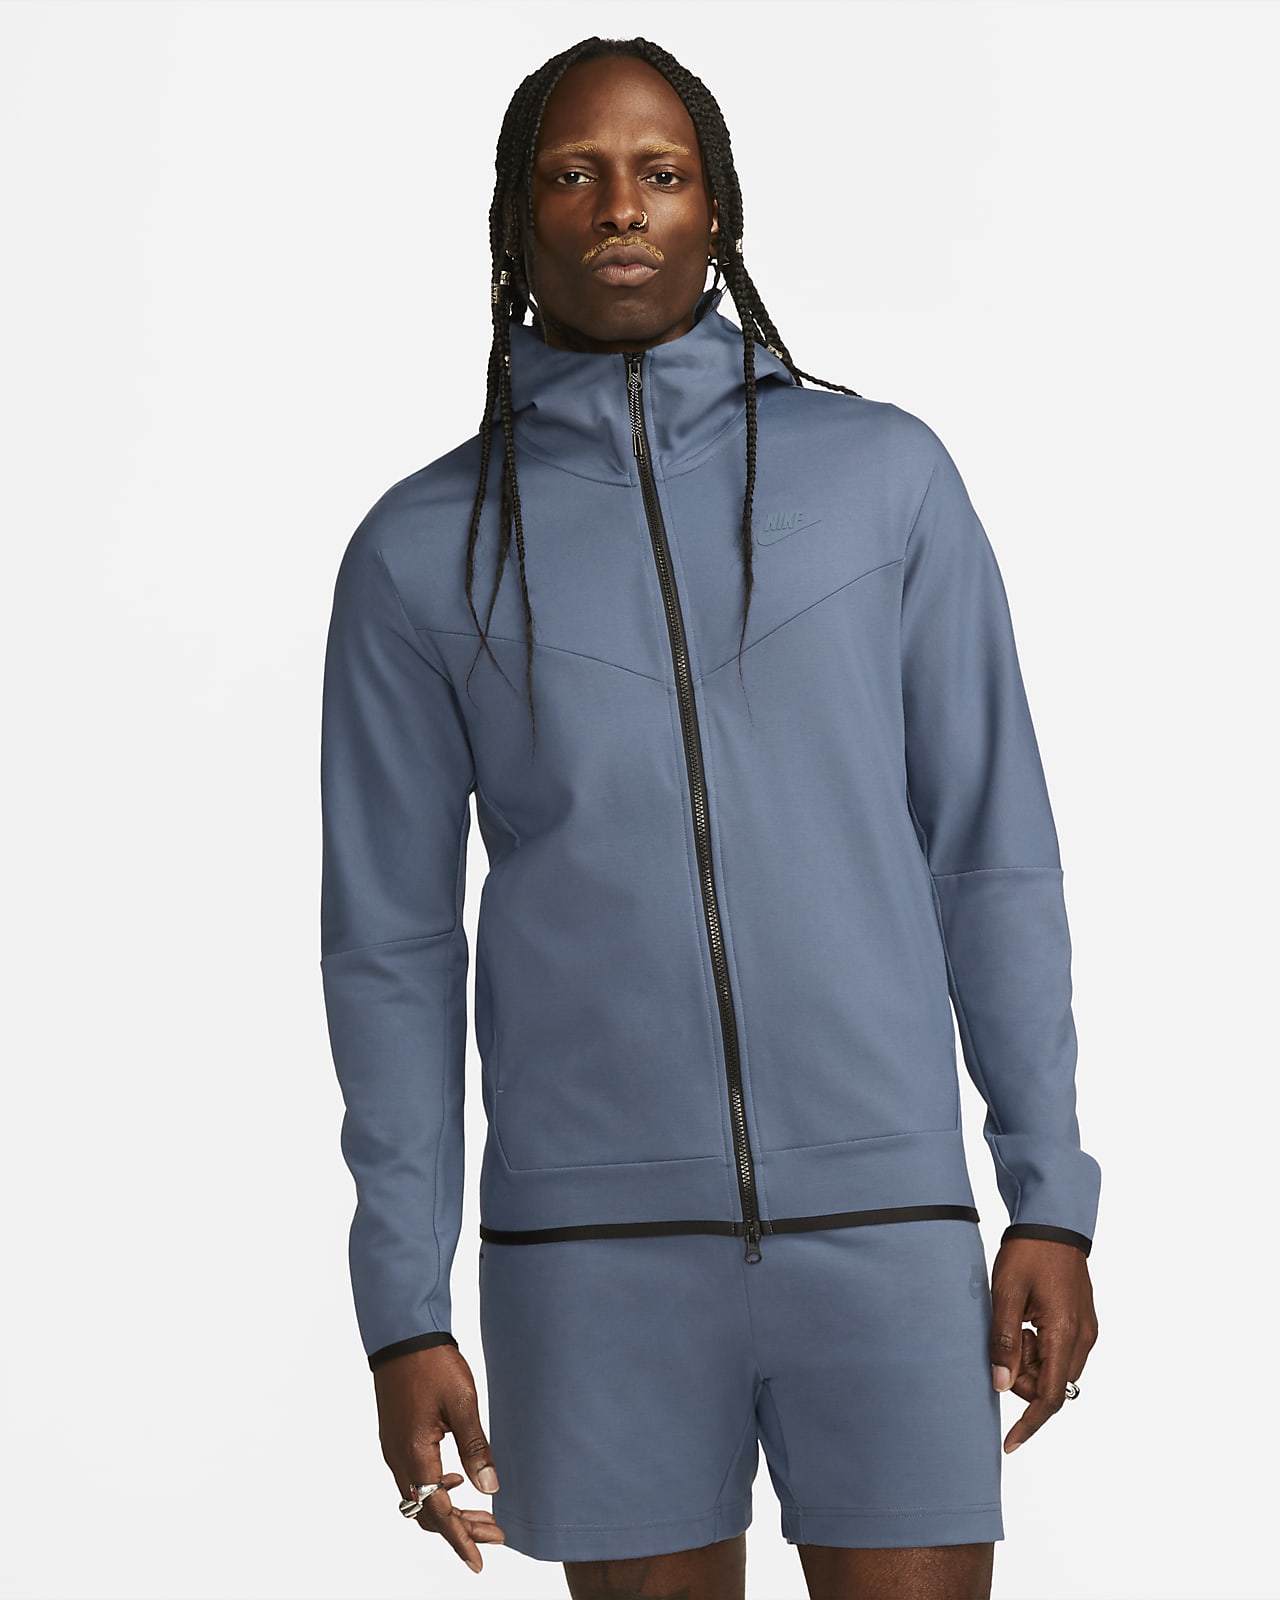 Nike Sportswear Tech Fleece Lightweight Men's Full-Zip Hoodie Sweatshirt.